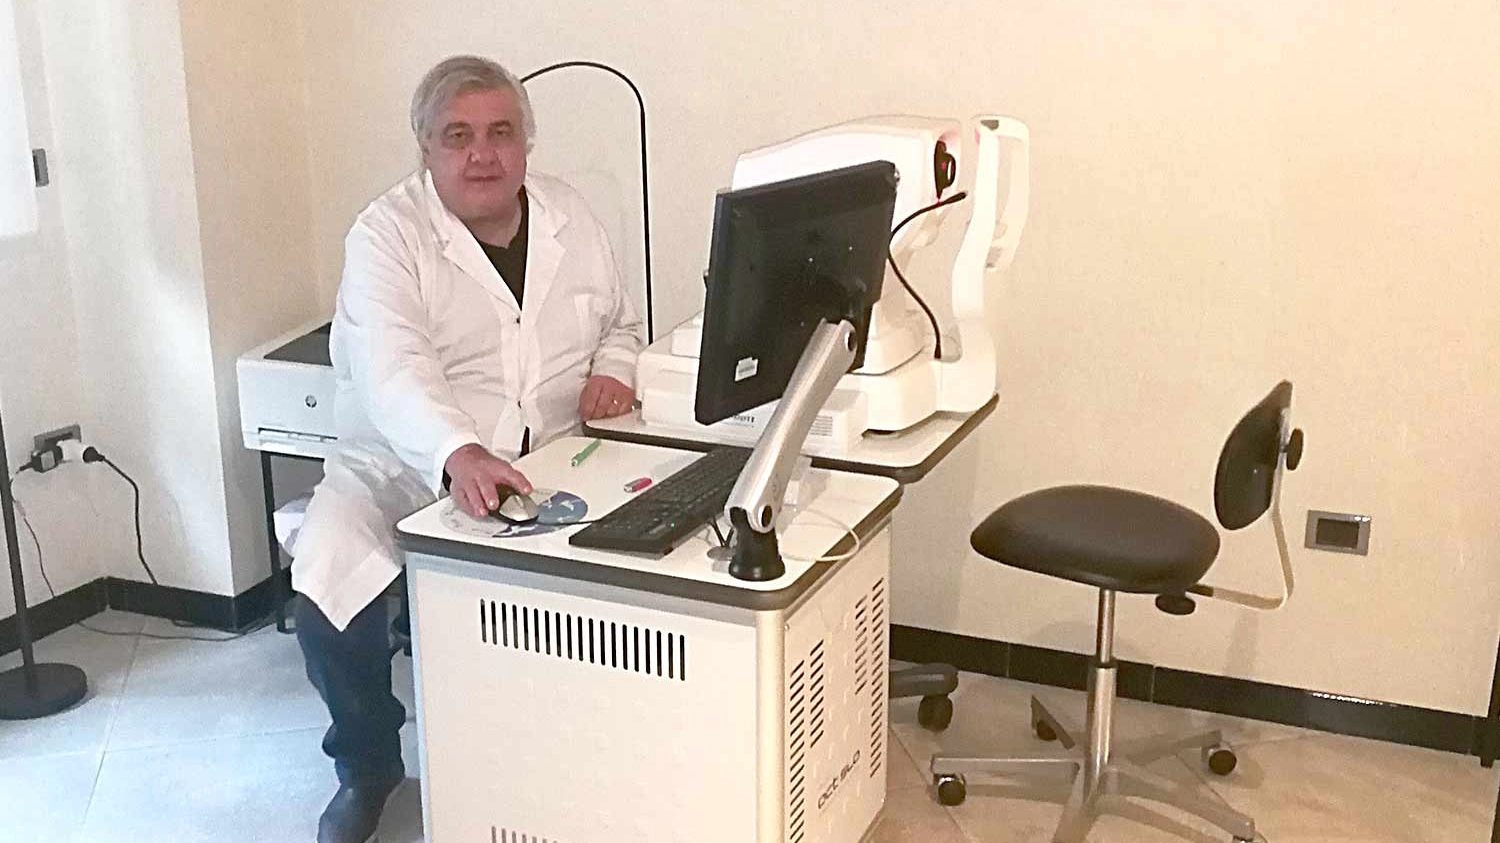 Il dottor Roberto Servadei, stimato oculista chirurgo, è scomparso a 65 anni dopo una lunga carriera dedicata alla cura del glaucoma. Lascia un vuoto nel reparto di Oculistica di Forlì e nel cuore dei colleghi e dei pazienti.